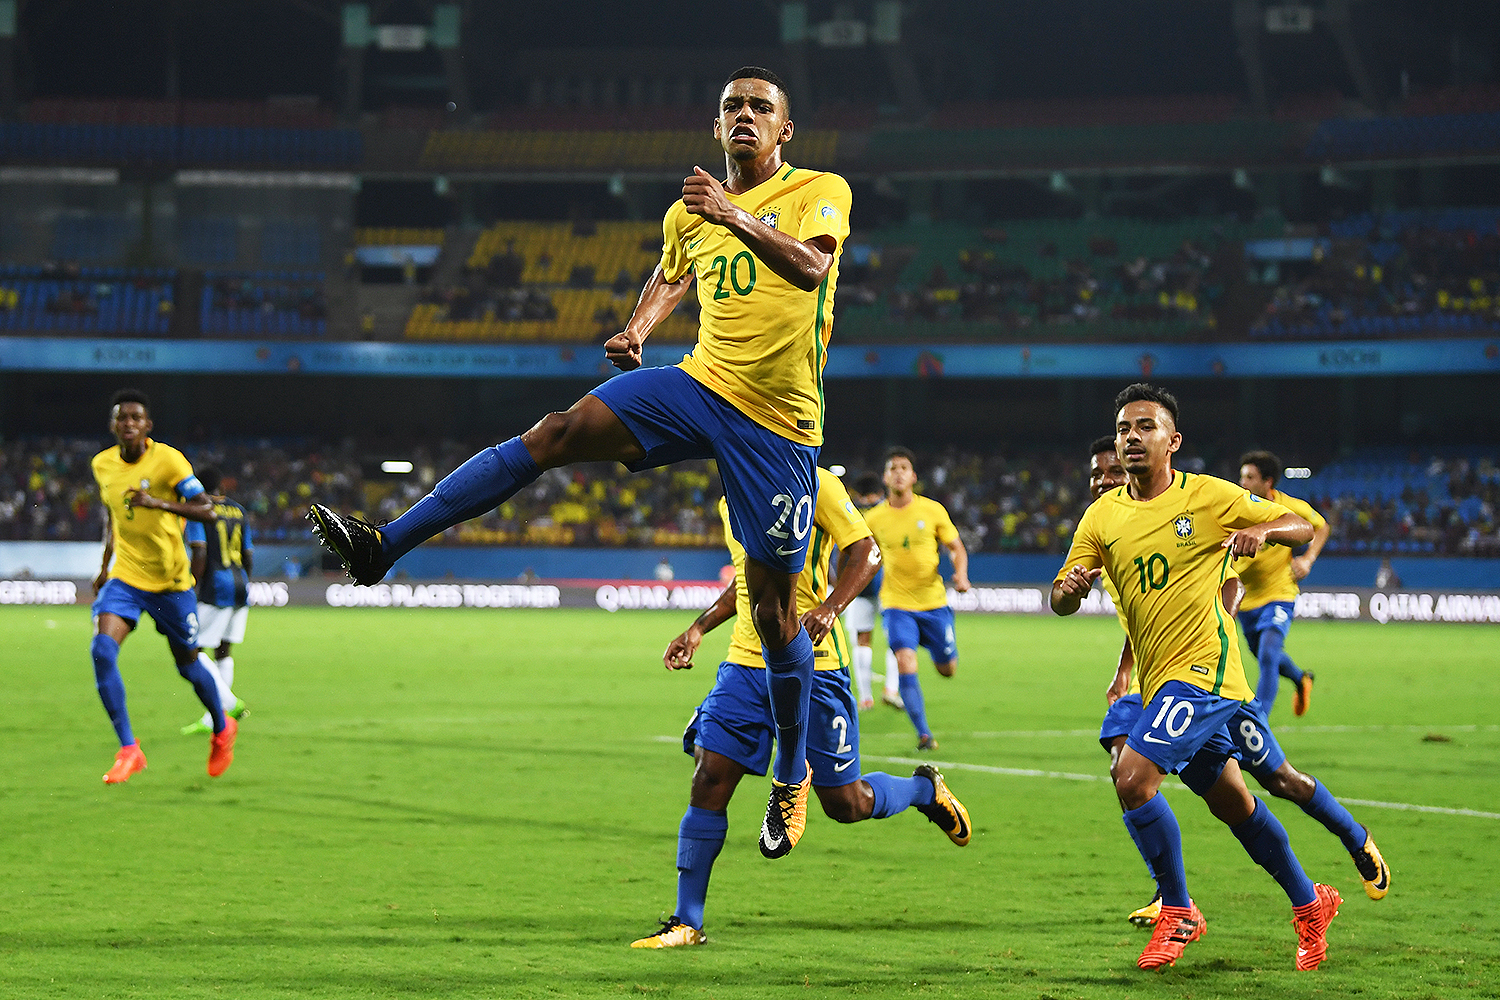 Brasil leva surra no Mundial Sub-17, perde 3º clássico e tem